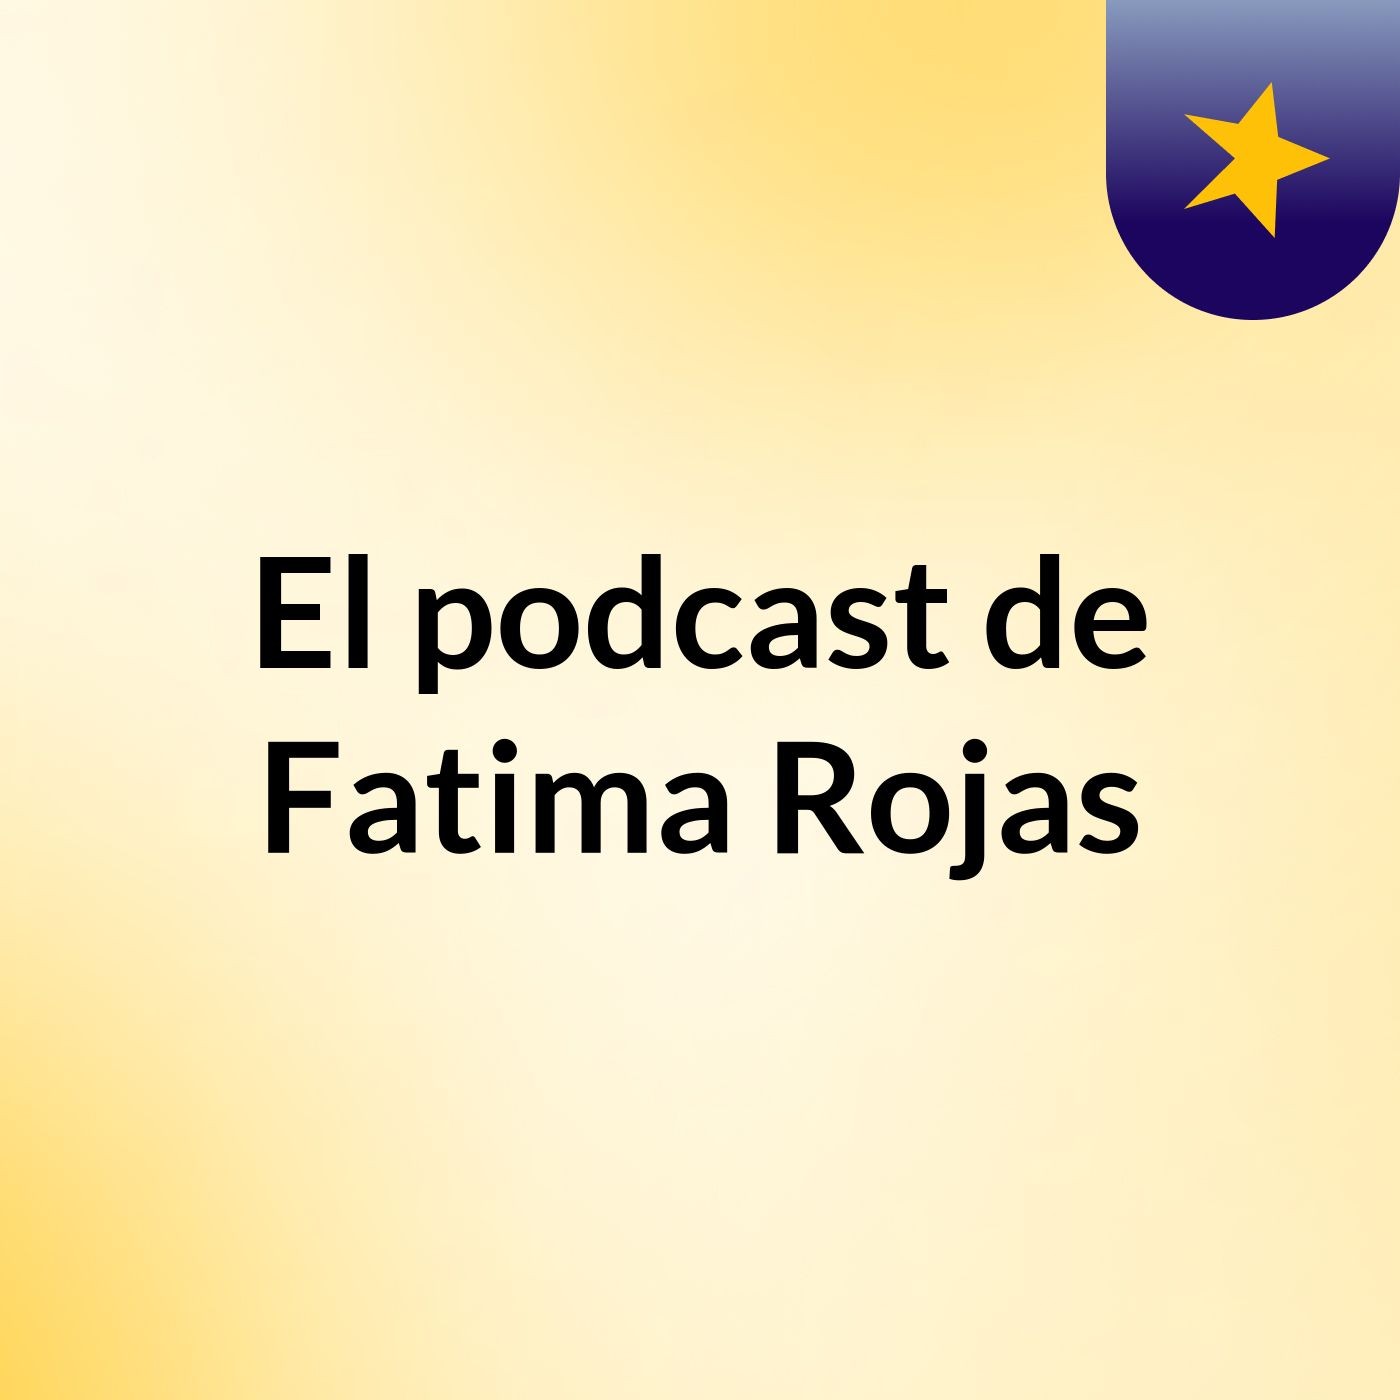 El podcast de Fatima Rojas